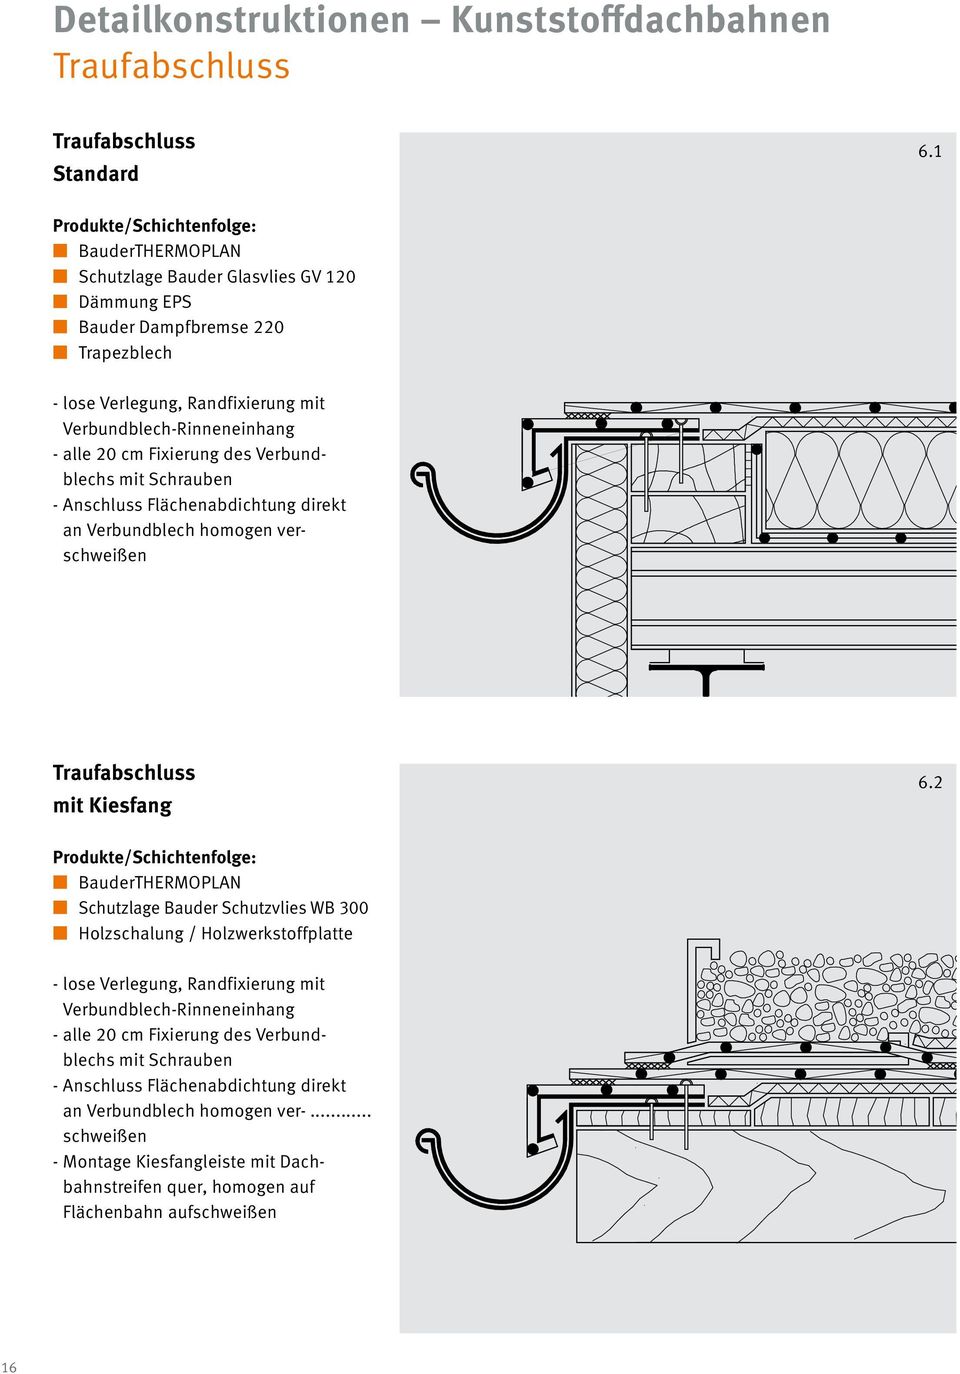 Verbundblechs mit Schrauben - Anschluss Flächenabdichtung direkt an Verbundblech homogen verschweißen Traufabschluss mit Kiesfang 6.